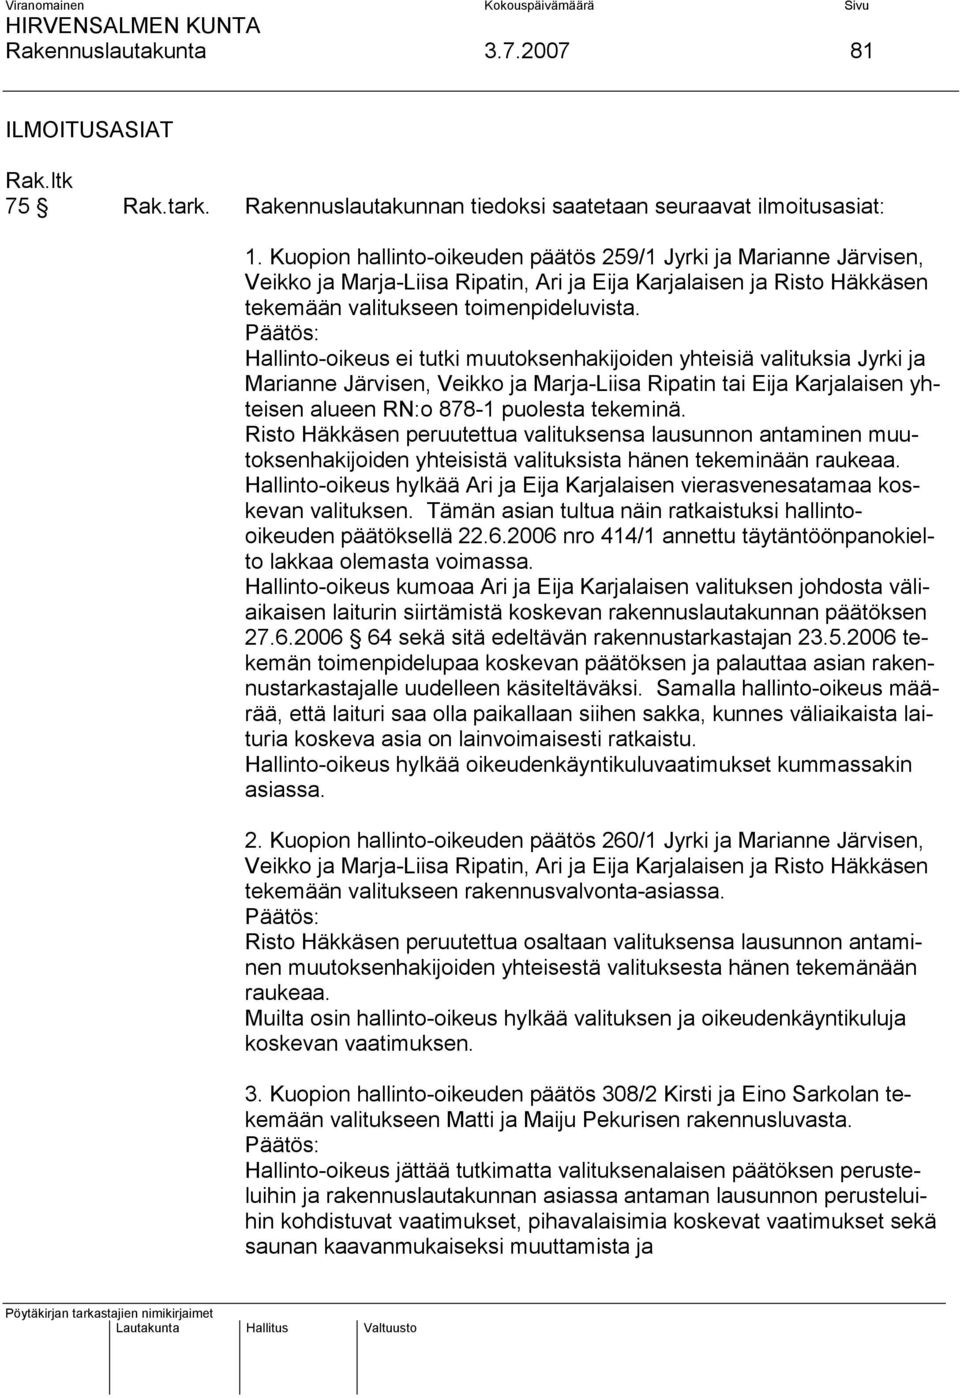 Päätös: Hallinto-oikeus ei tutki muutoksenhakijoiden yhteisiä valituksia Jyrki ja Marianne Järvisen, Veikko ja Marja-Liisa Ripatin tai Eija Karjalaisen yhteisen alueen RN:o 878-1 puolesta tekeminä.